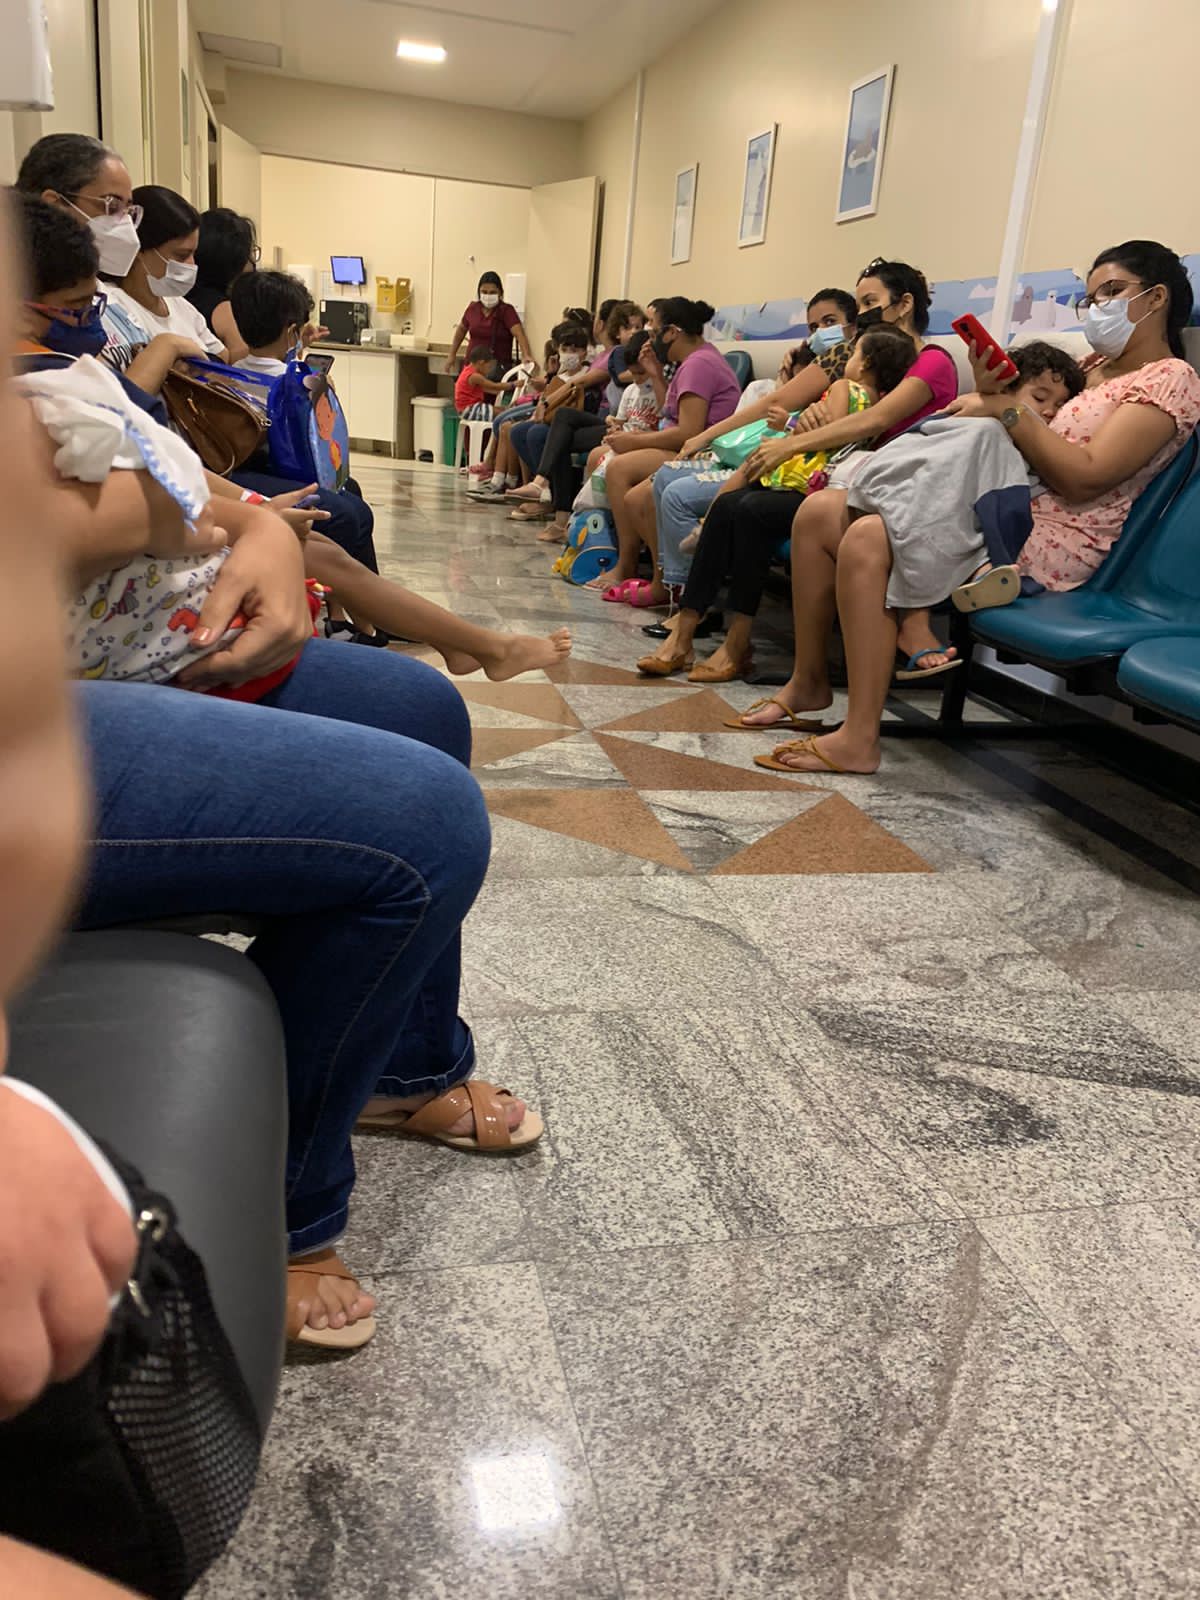 Filas e dezenas de crianças: Vídeo mostra caos em hospital da Unimed no RN